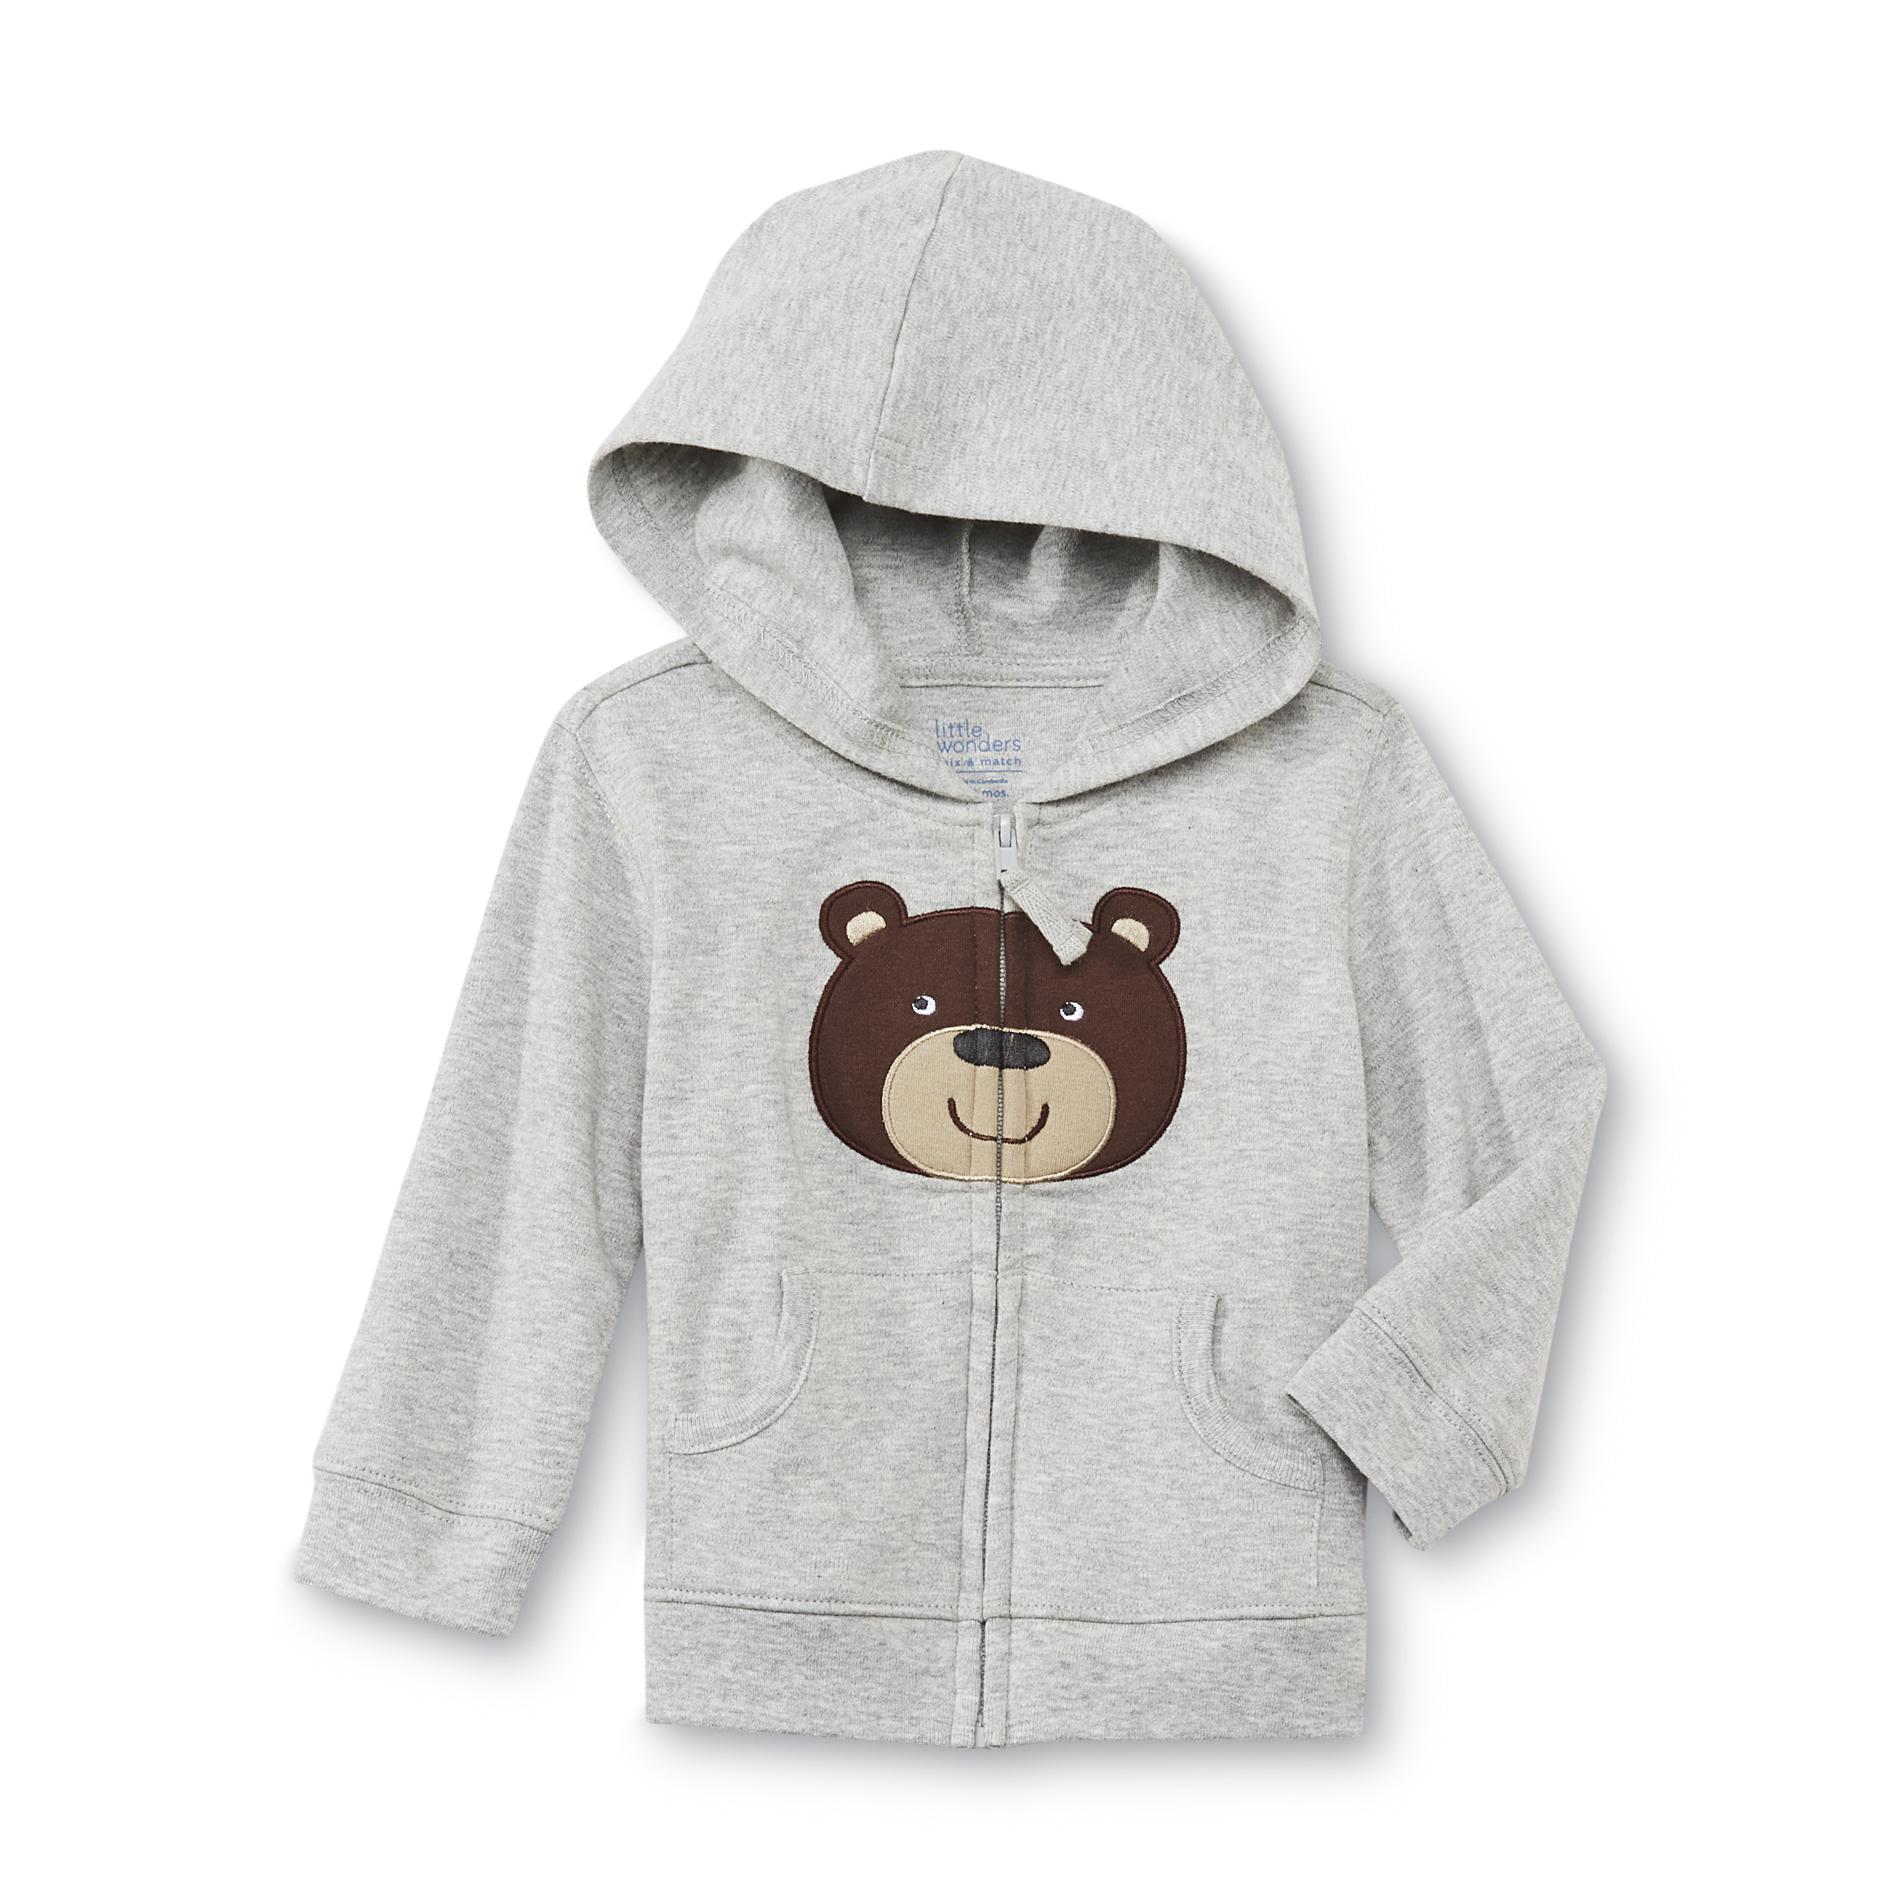 Little Wonders Newborn & Infant Boy's Hoodie Jacket - Bear